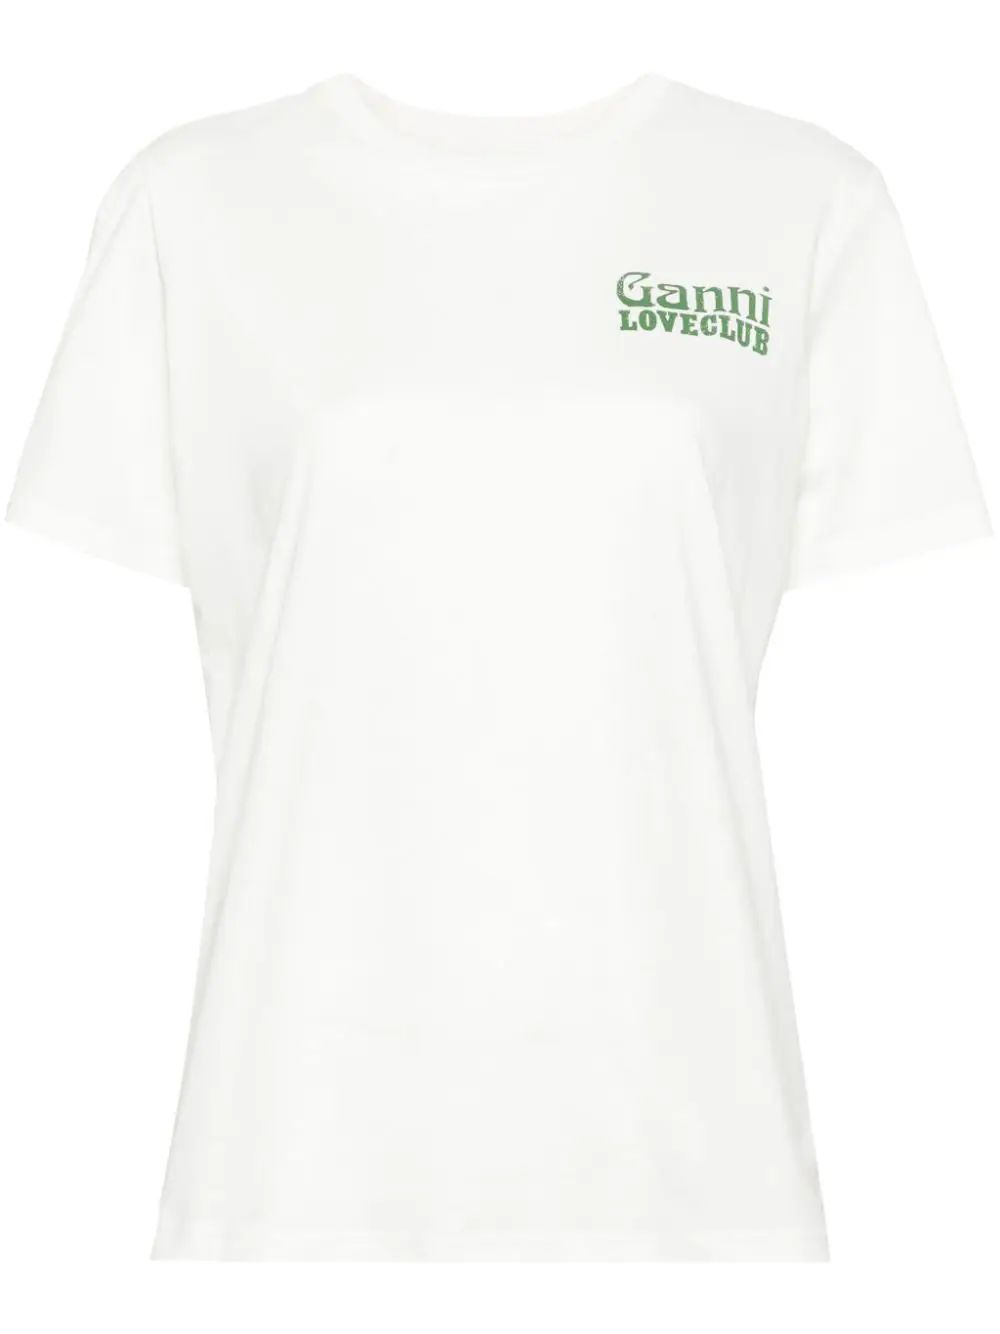 GANNI Loveclub Organic Cotton T-shirt - Farfetch | Farfetch Global